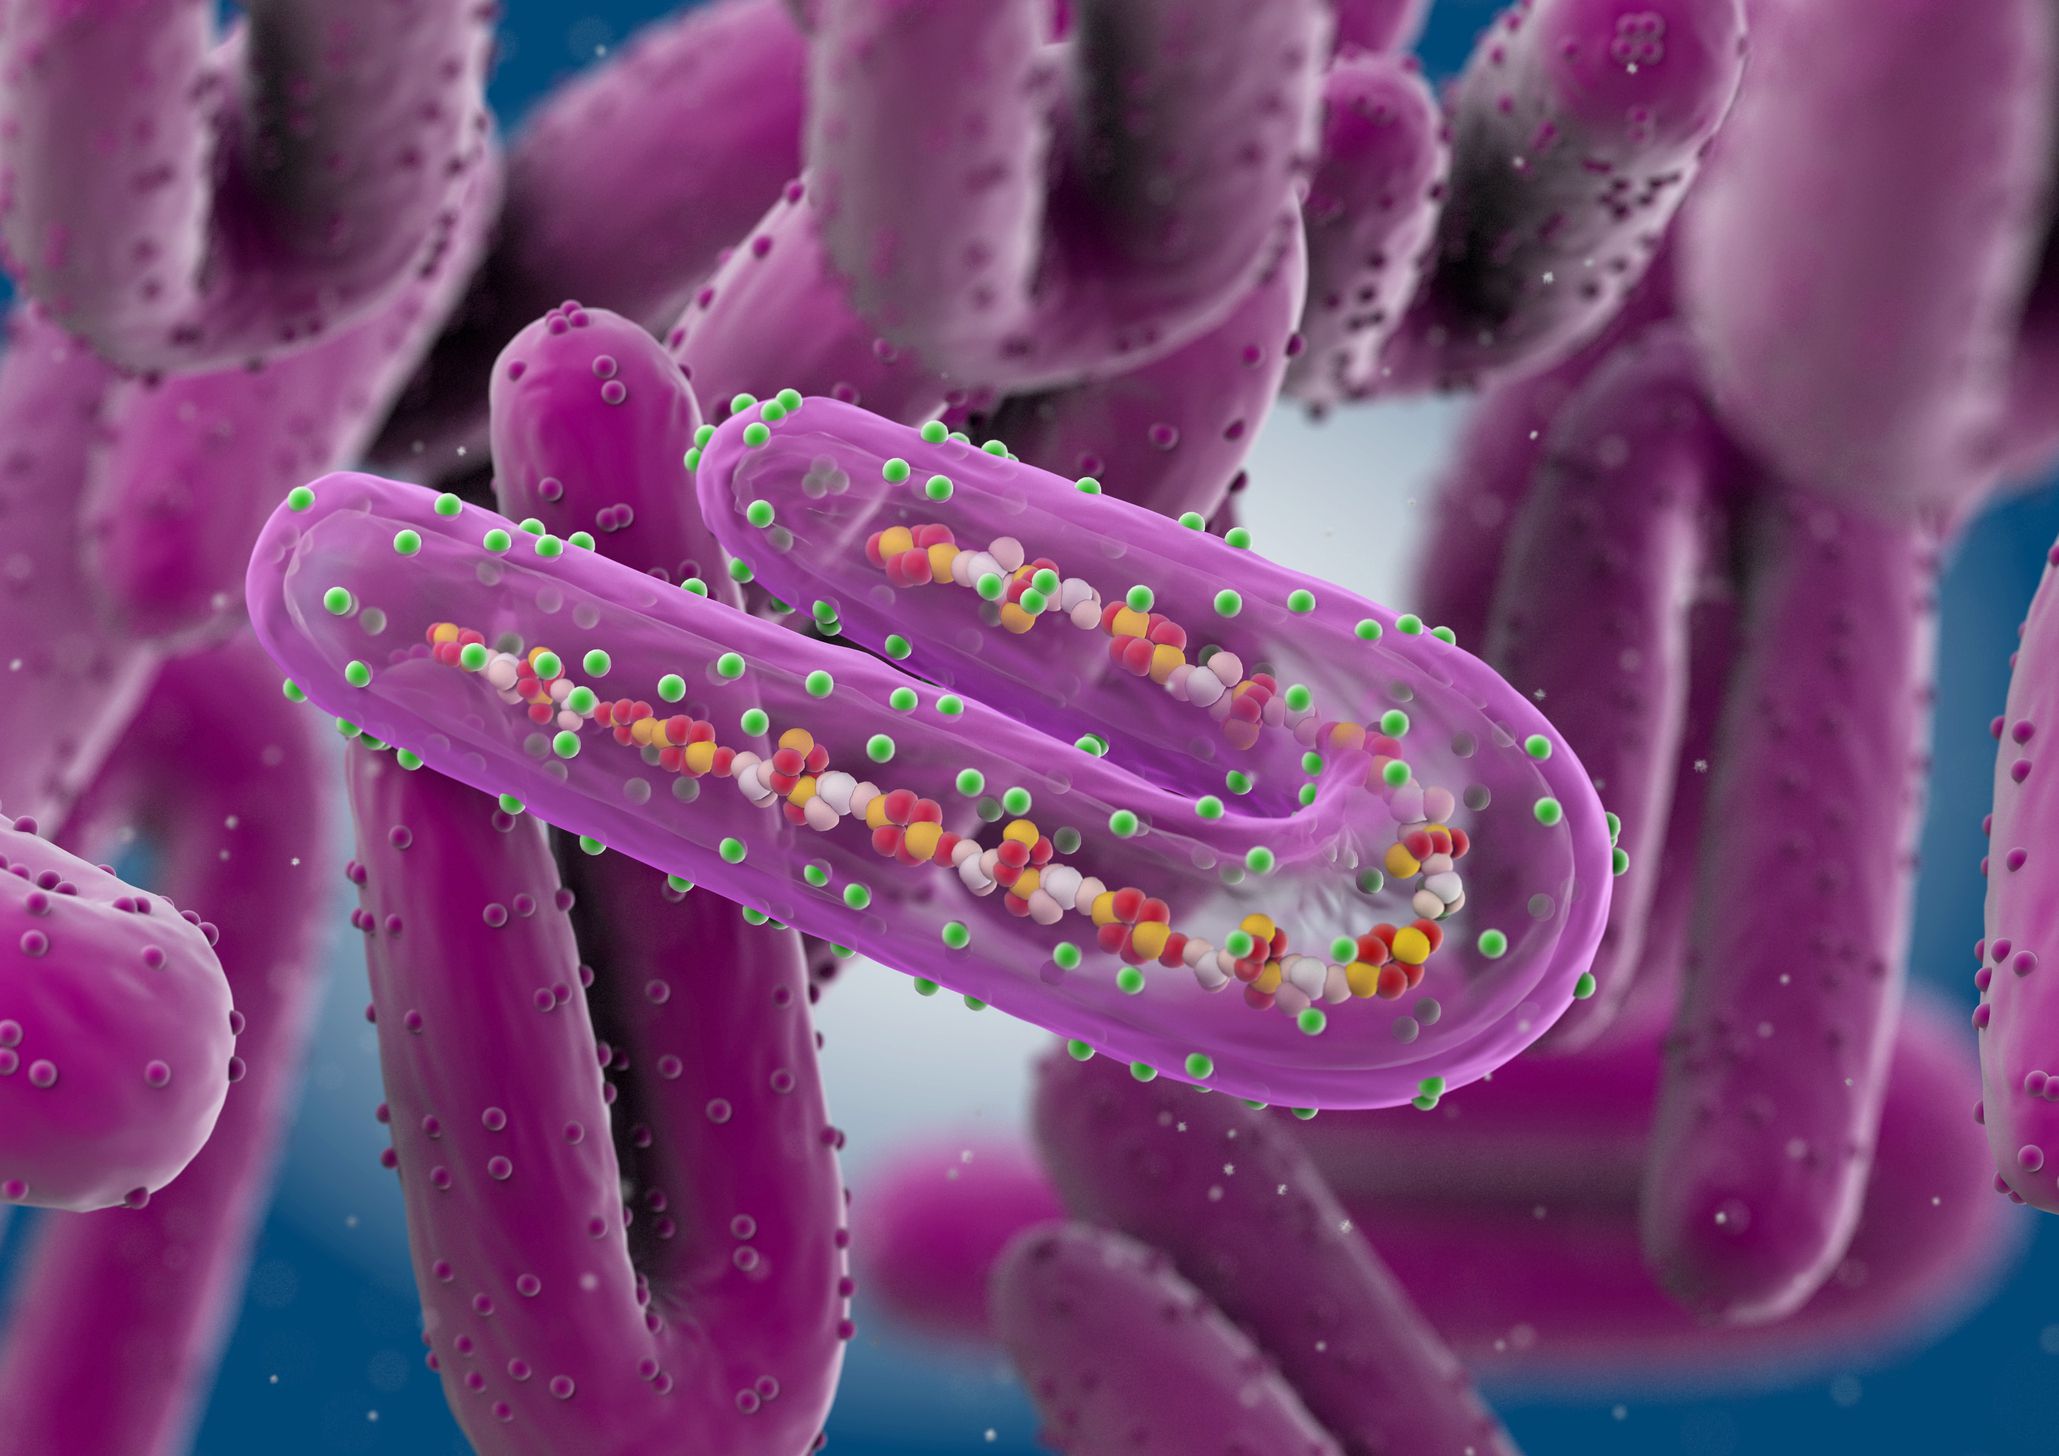   Virus Marburg giống với Ebola ở chỗ cả hai có thể gây bệnh sốt xuất huyết  